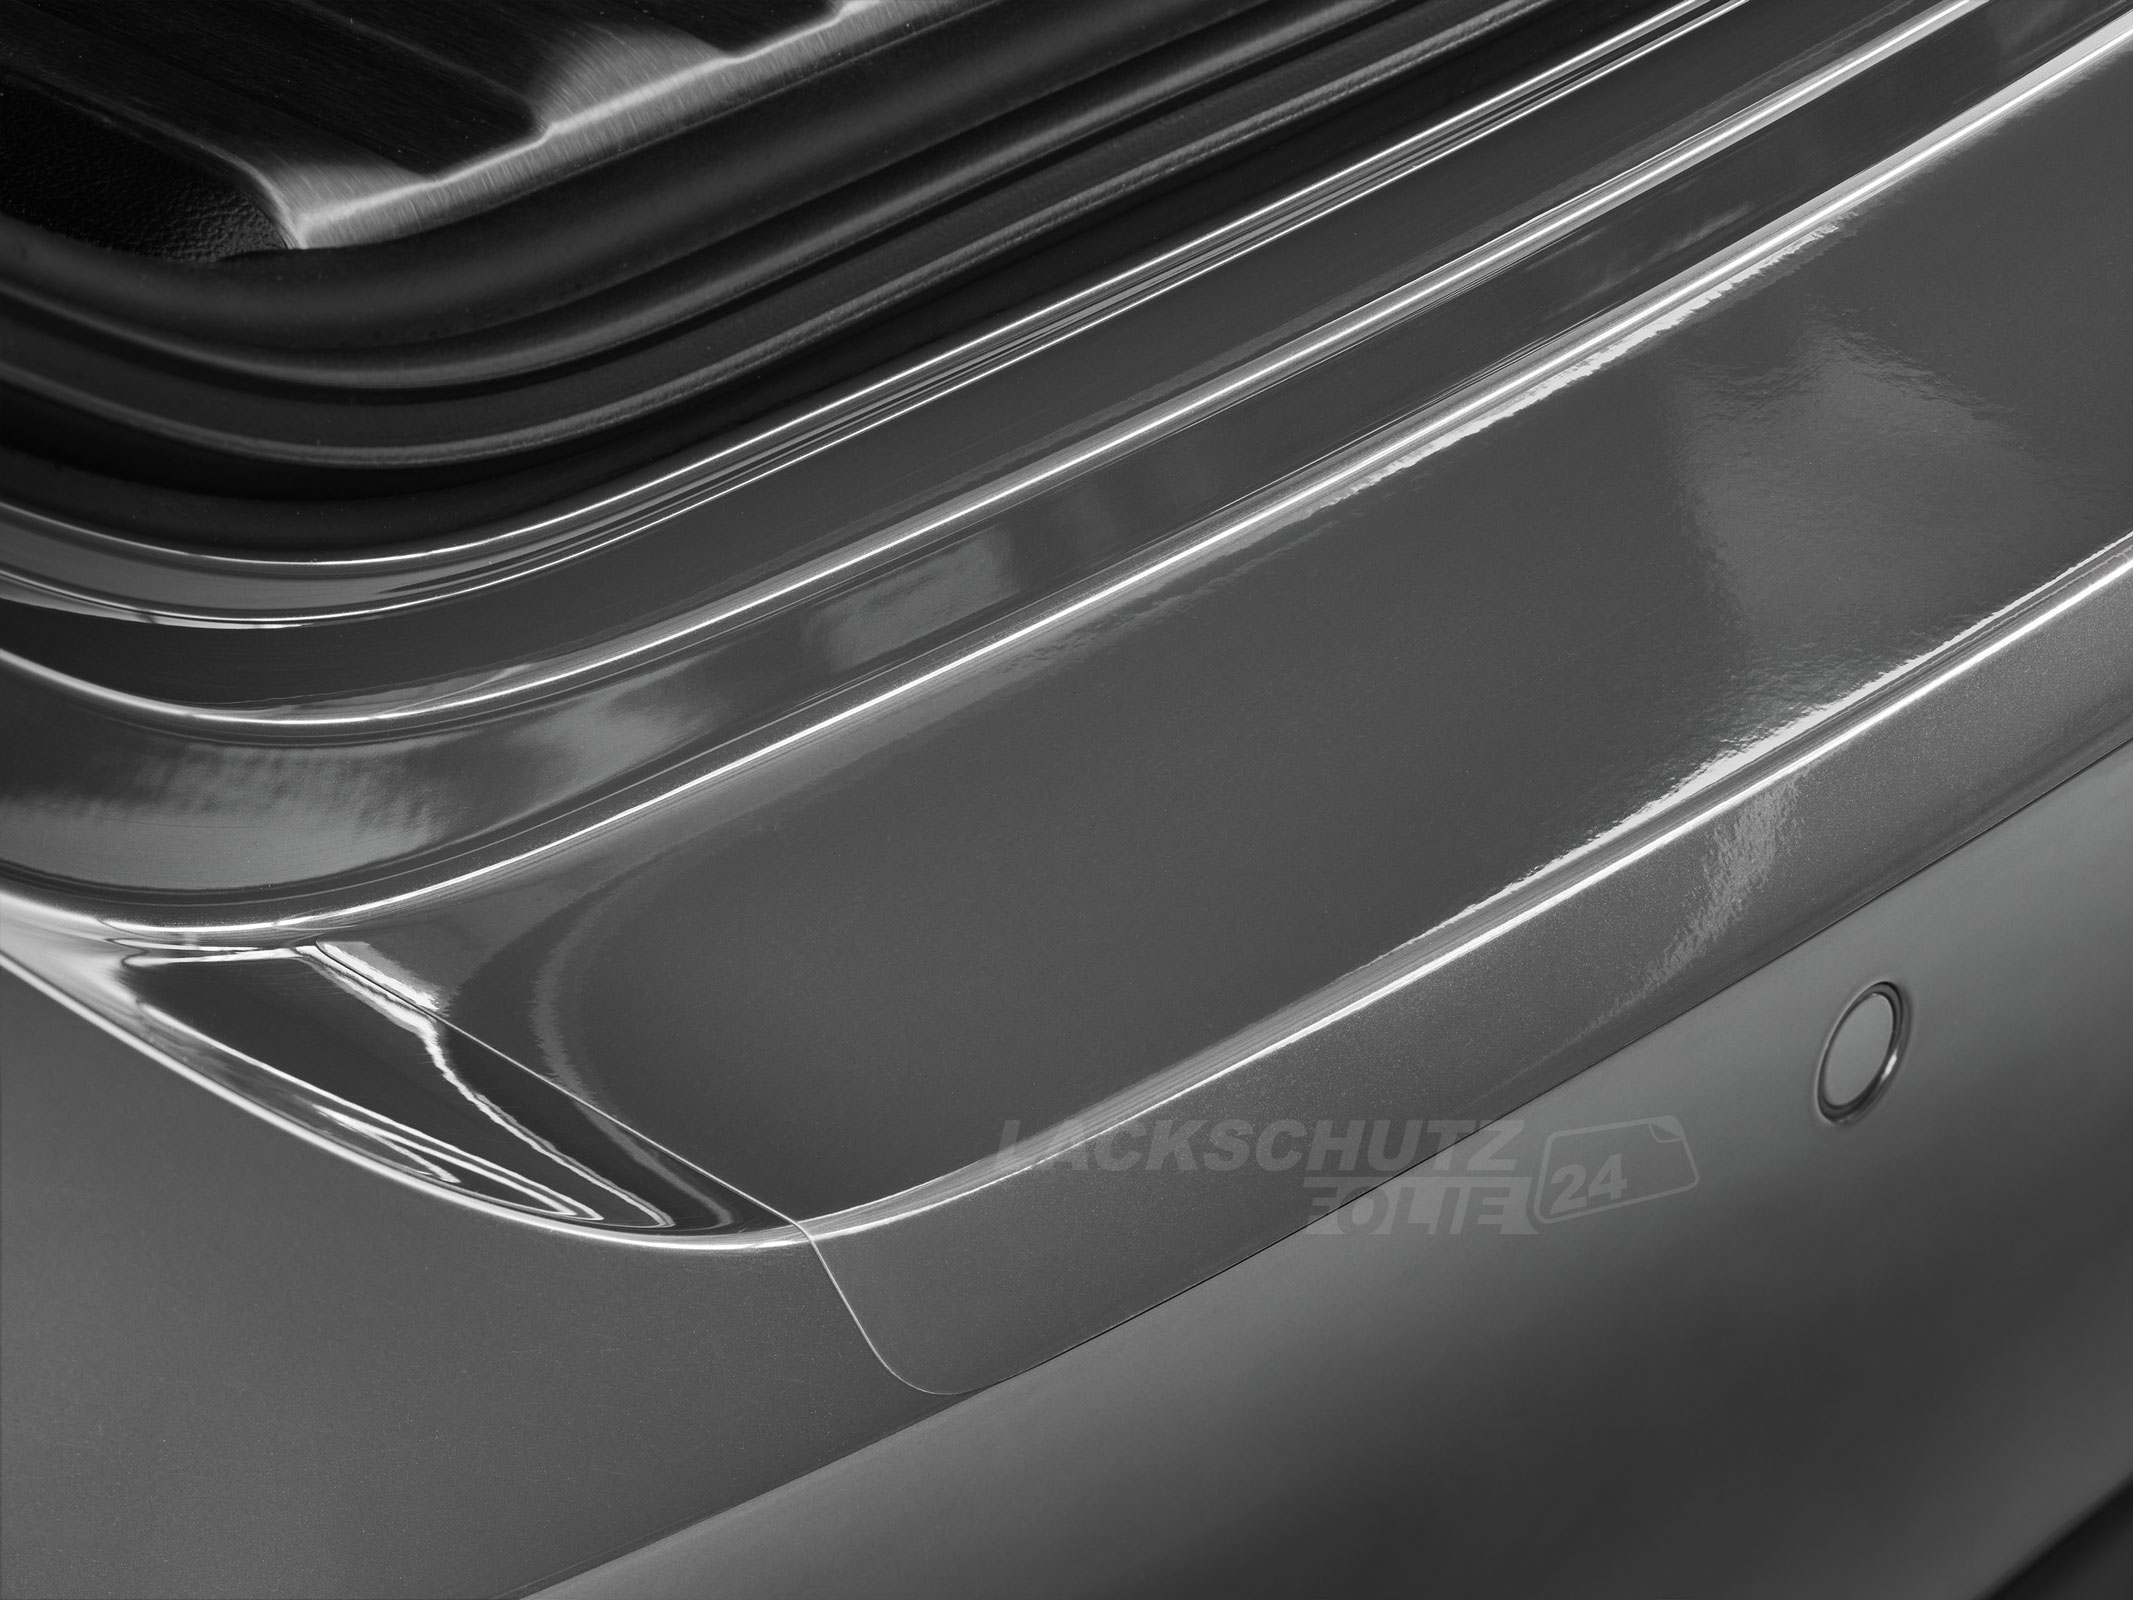 Ladekantenschutzfolie - Transparent Glatt Hochglänzend 150 µm stark für Renault Fluence ab BJ 2010